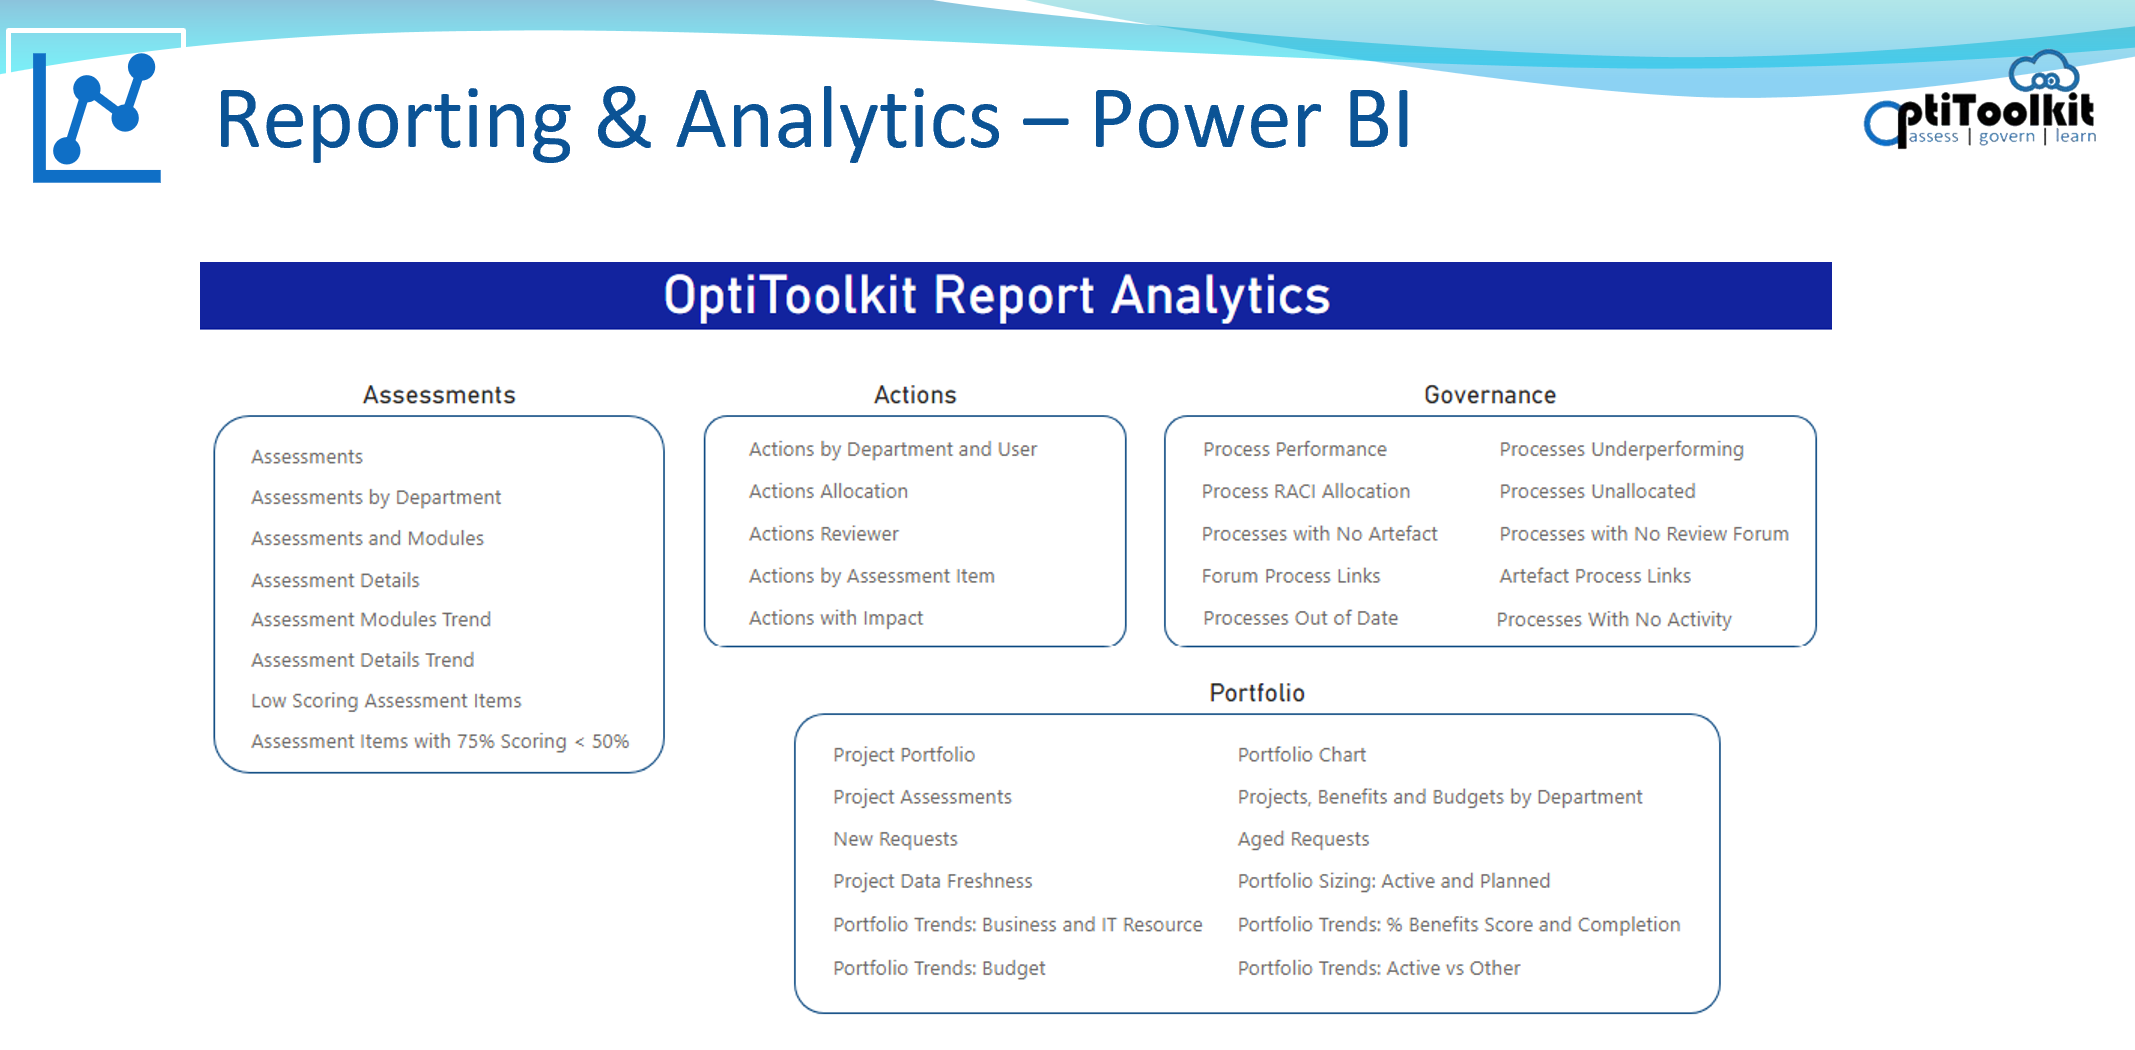 Analytics - Power BI